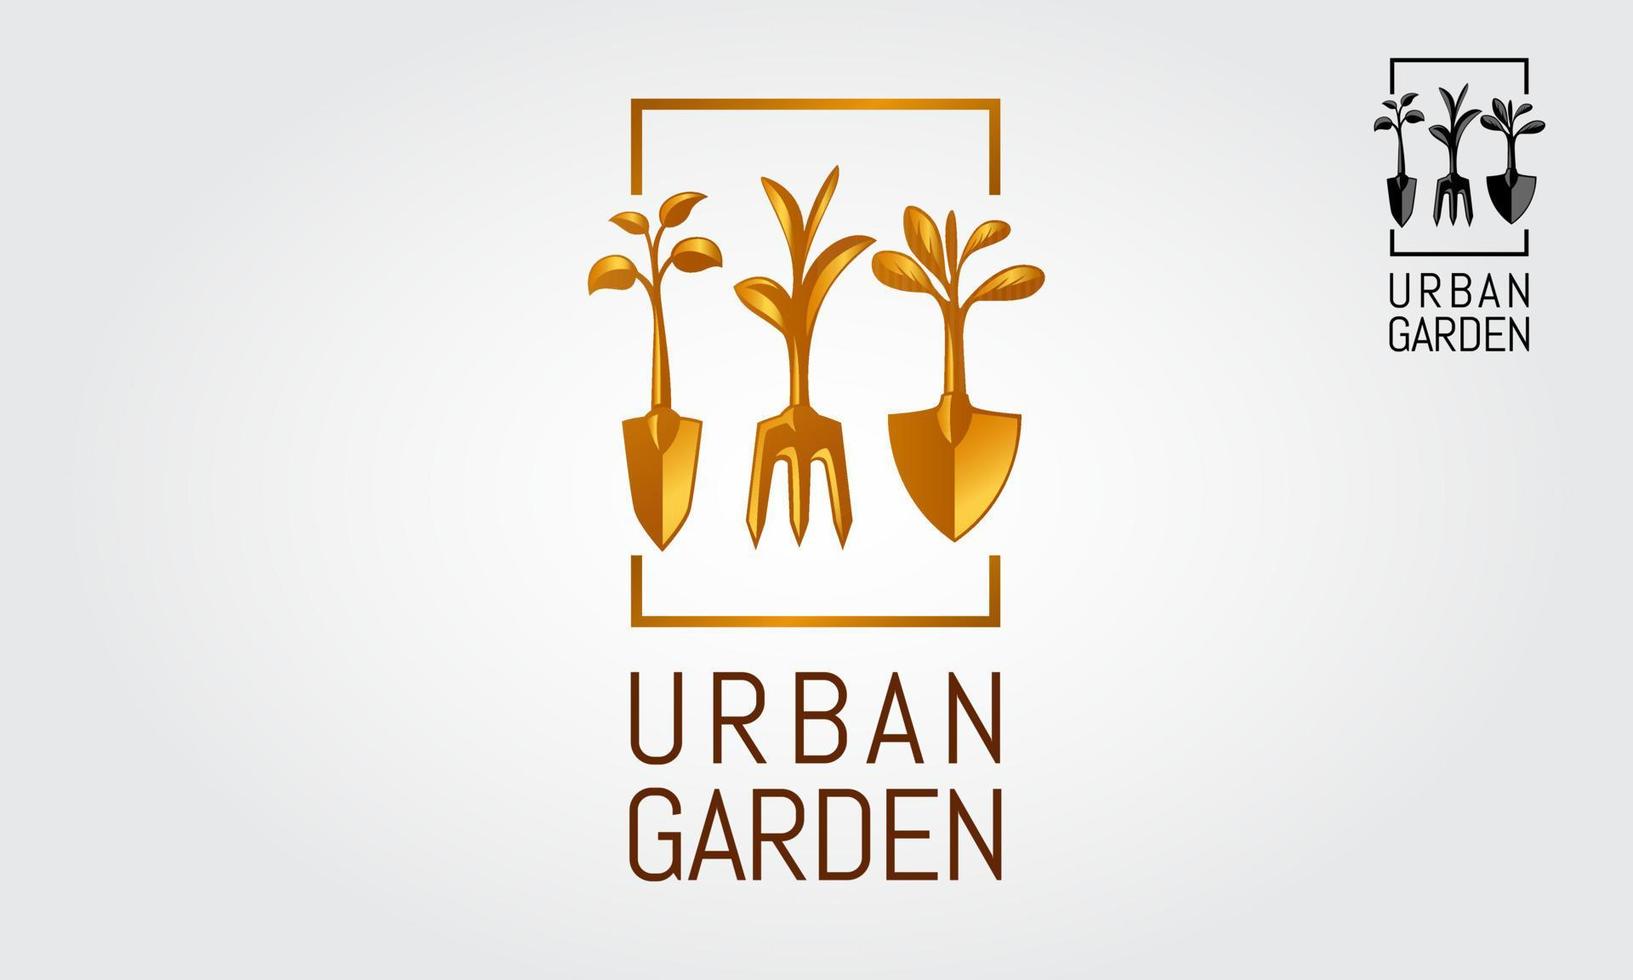 Urban Garden Vektor-Logo-Vorlage. ein natürliches und modernes Logo, das für Landschaftsgestaltung, Gartenarbeit, Indoor-Gärtnerei, Landwirtschaft, Landwirtschaft oder jedes andere Projekt verwendet werden kann, das Sie für geeignet halten. vektor